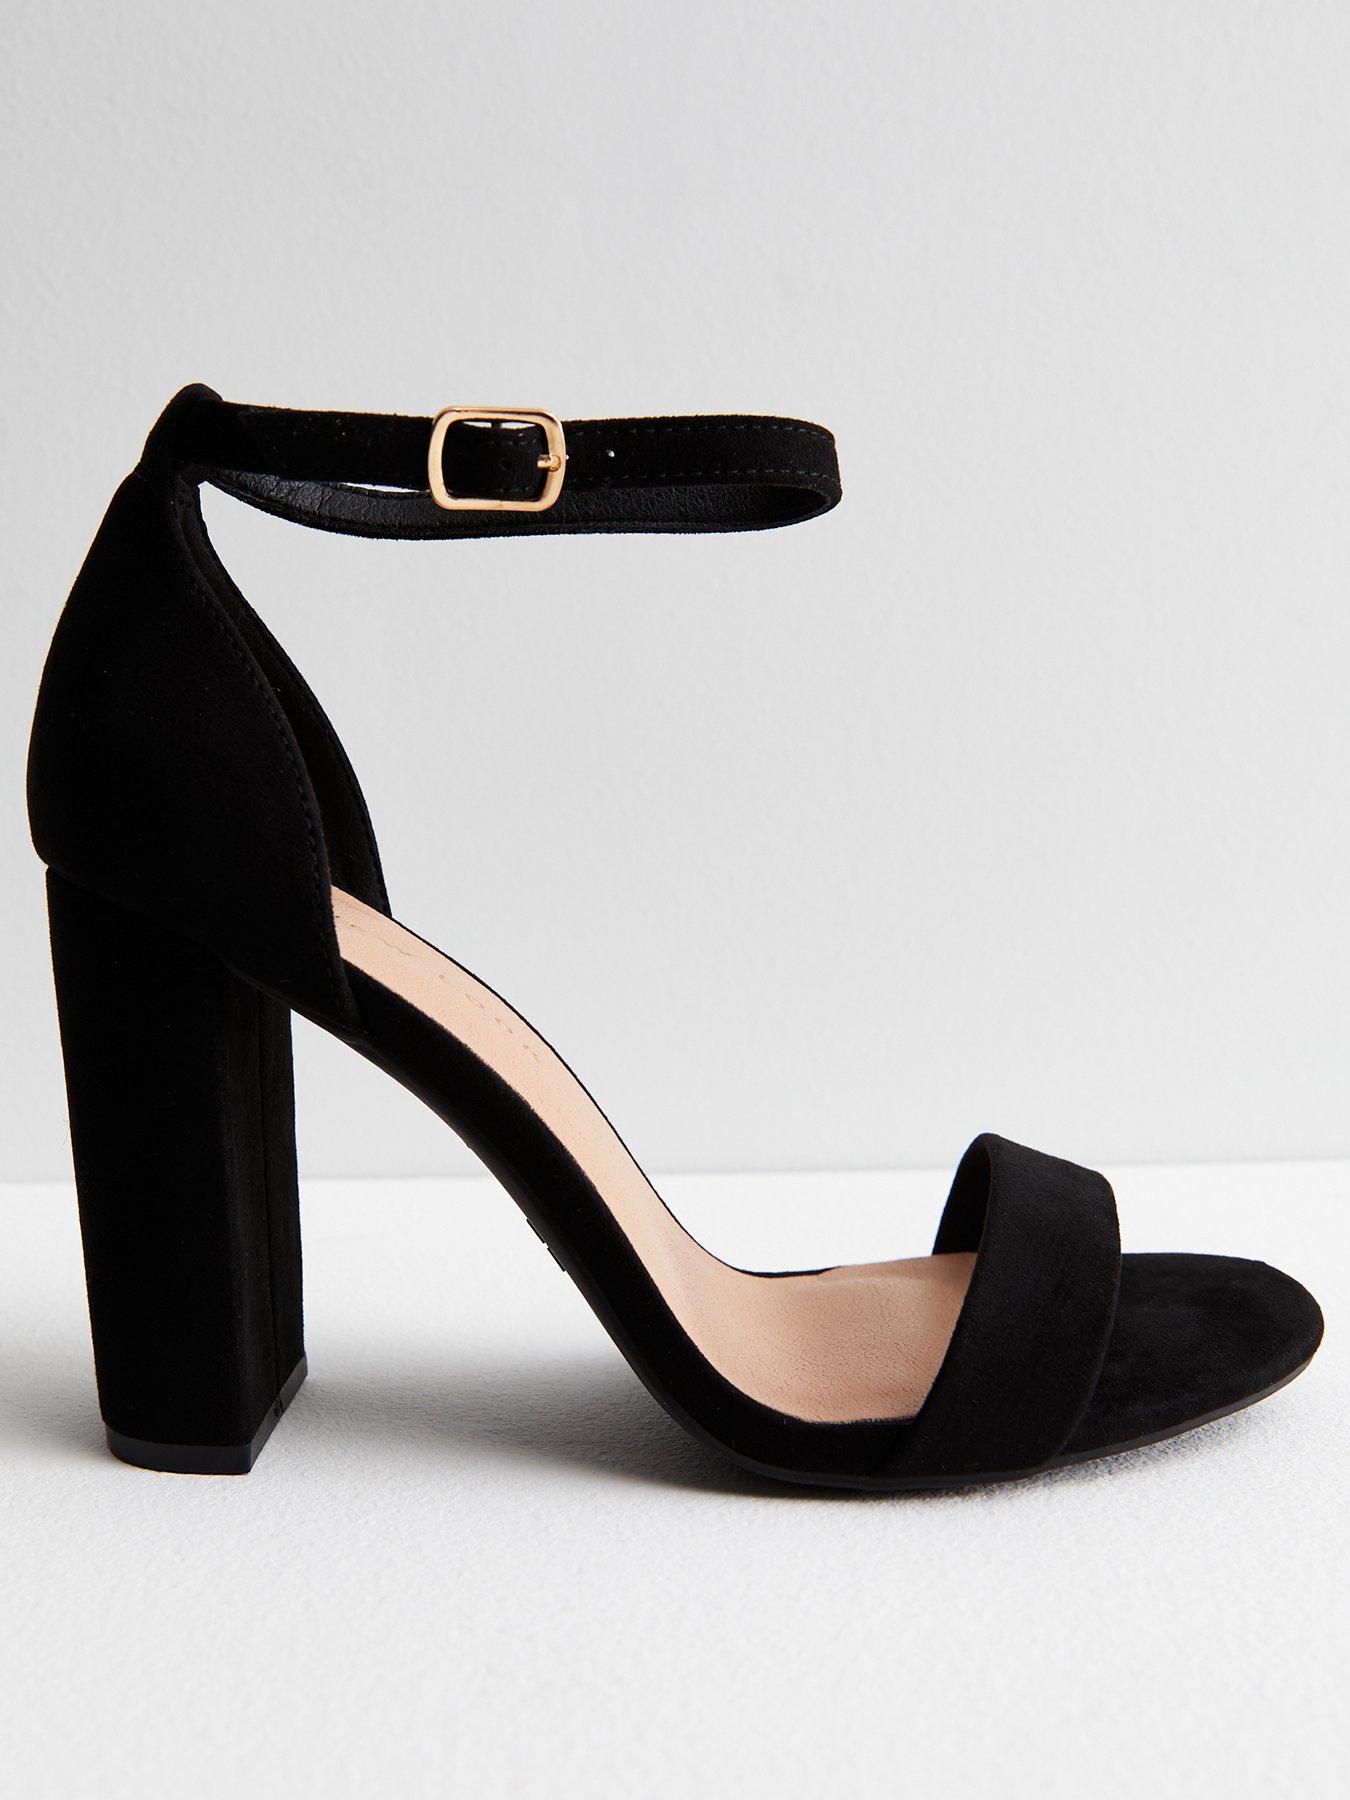 New Look Womens Block heels SALE • Up to 50% discount